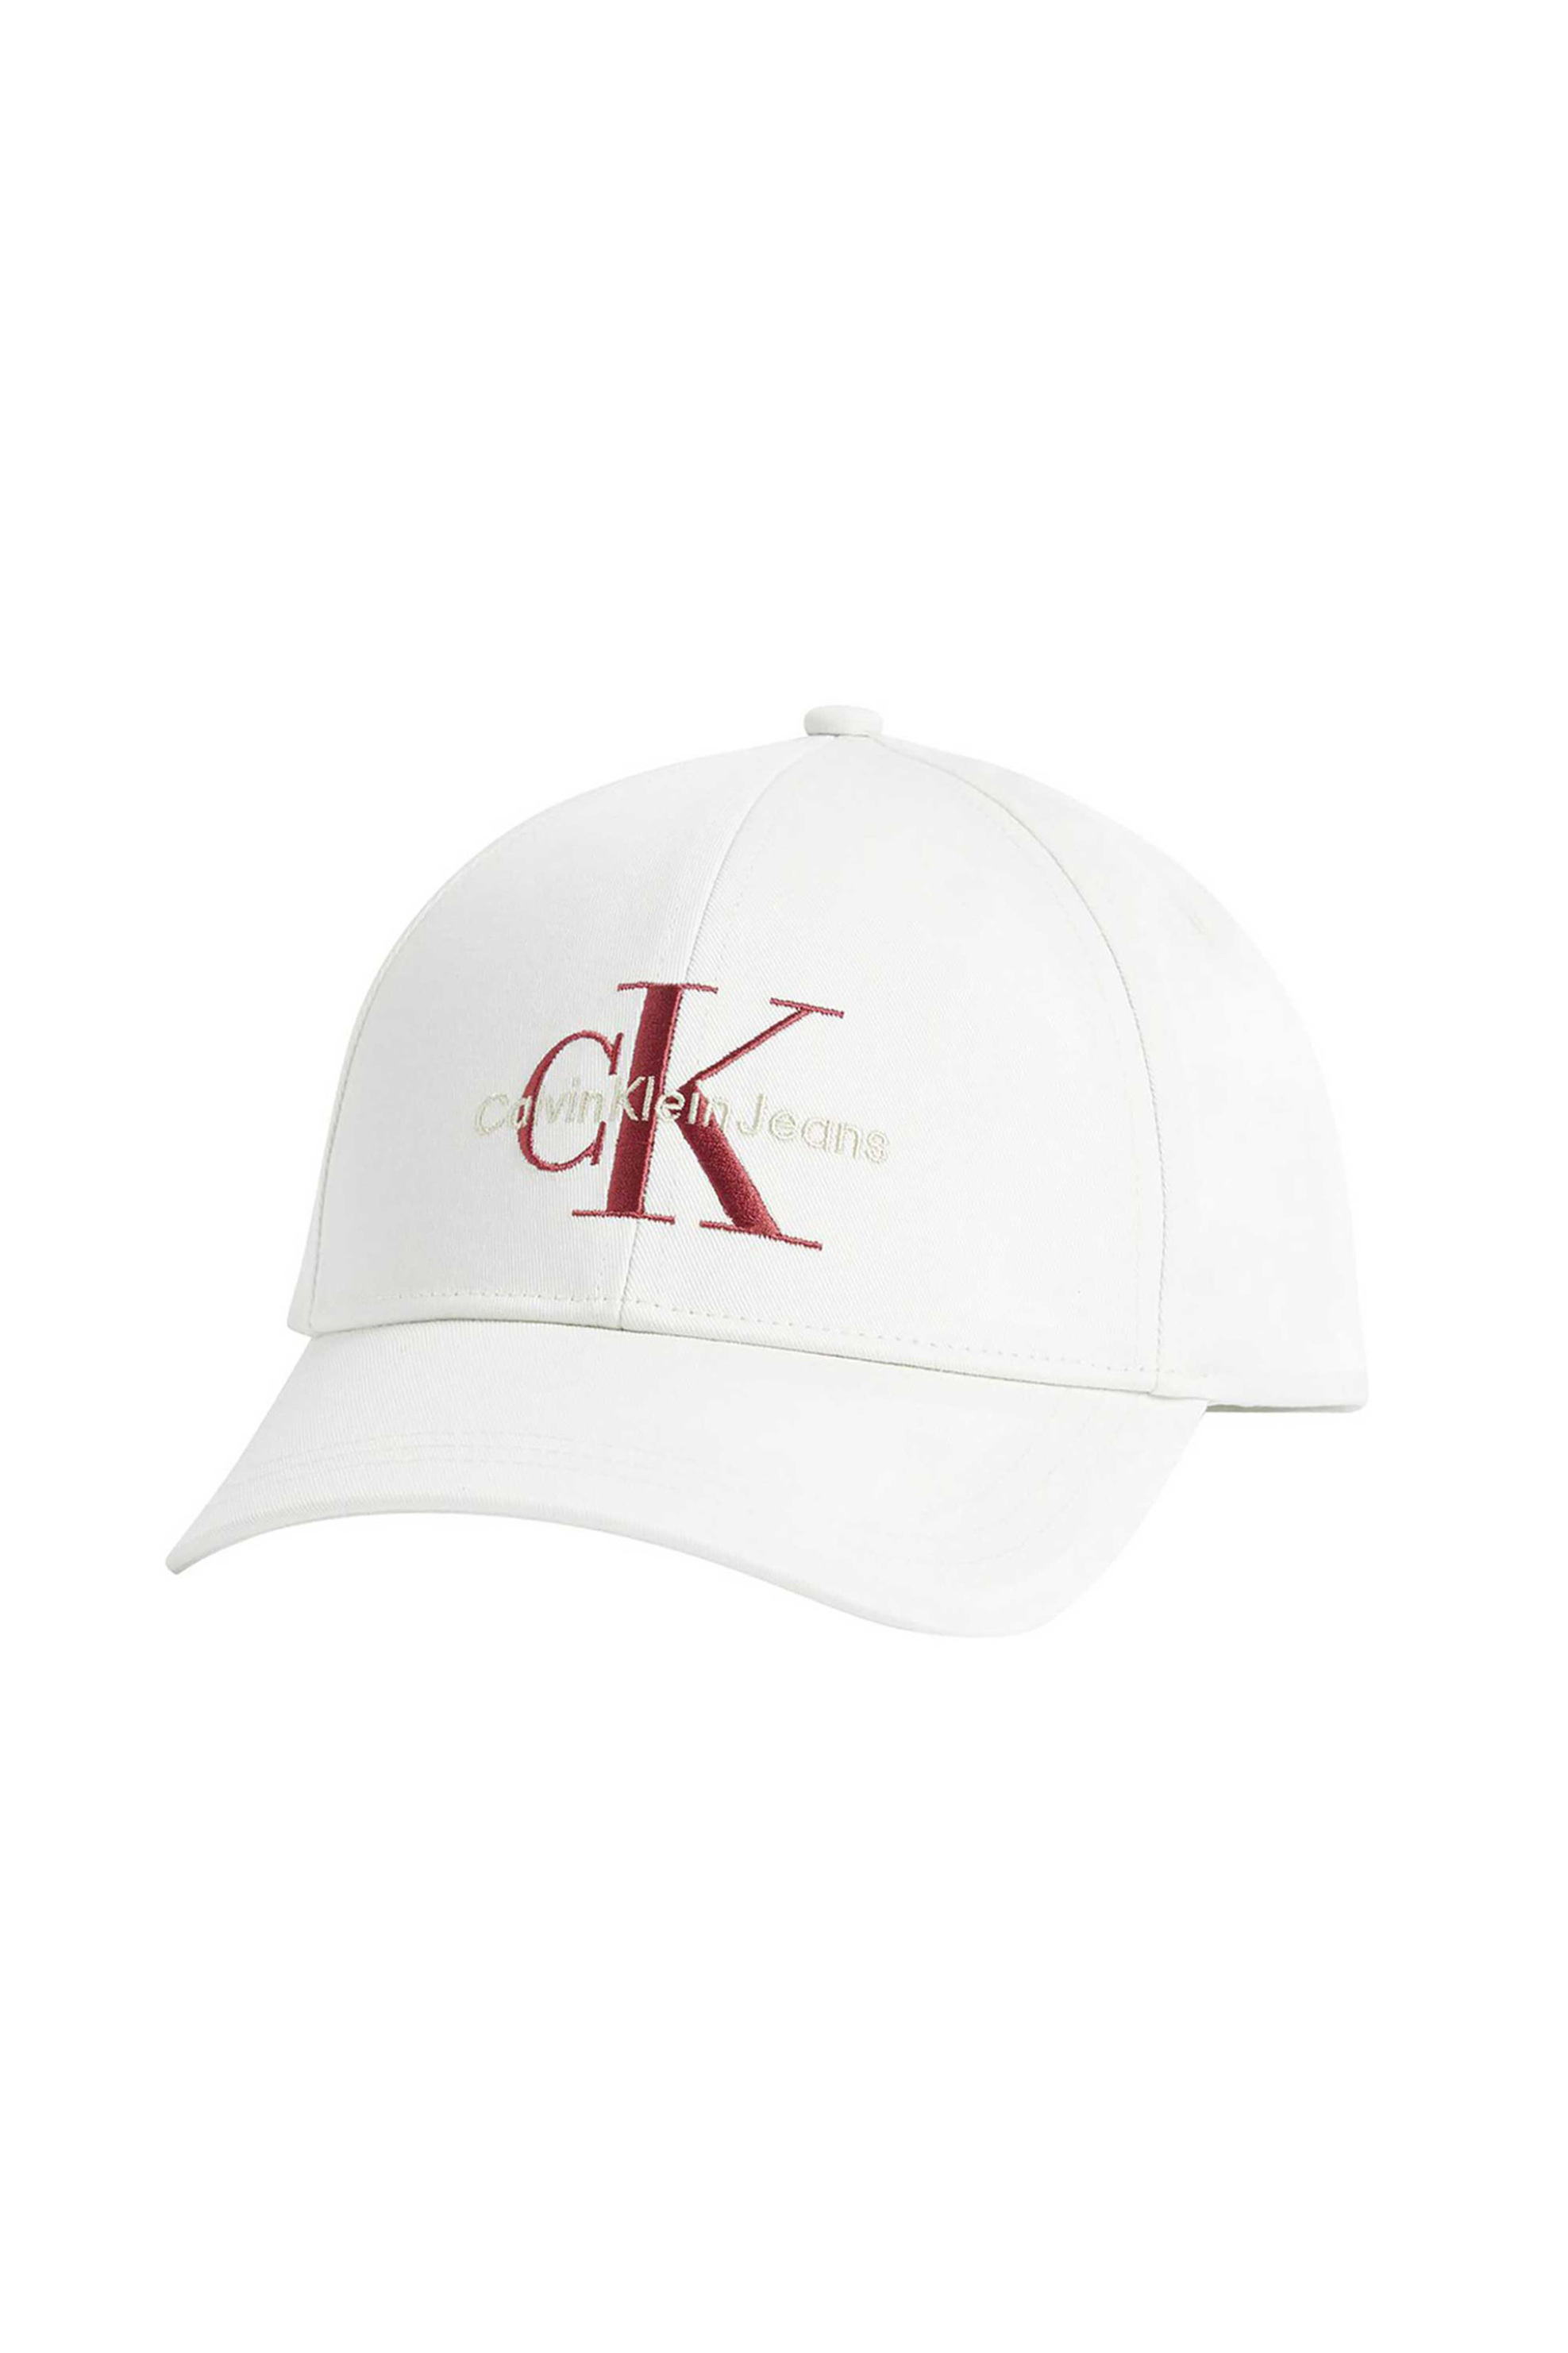 Ανδρική Μόδα > Ανδρικά Αξεσουάρ > Ανδρικά Καπέλα & Σκούφοι CK Jeans ανδρικό καπέλο μονόχρωμο με contrast κεντημένο λογότυπο - K50K510061 Λευκό